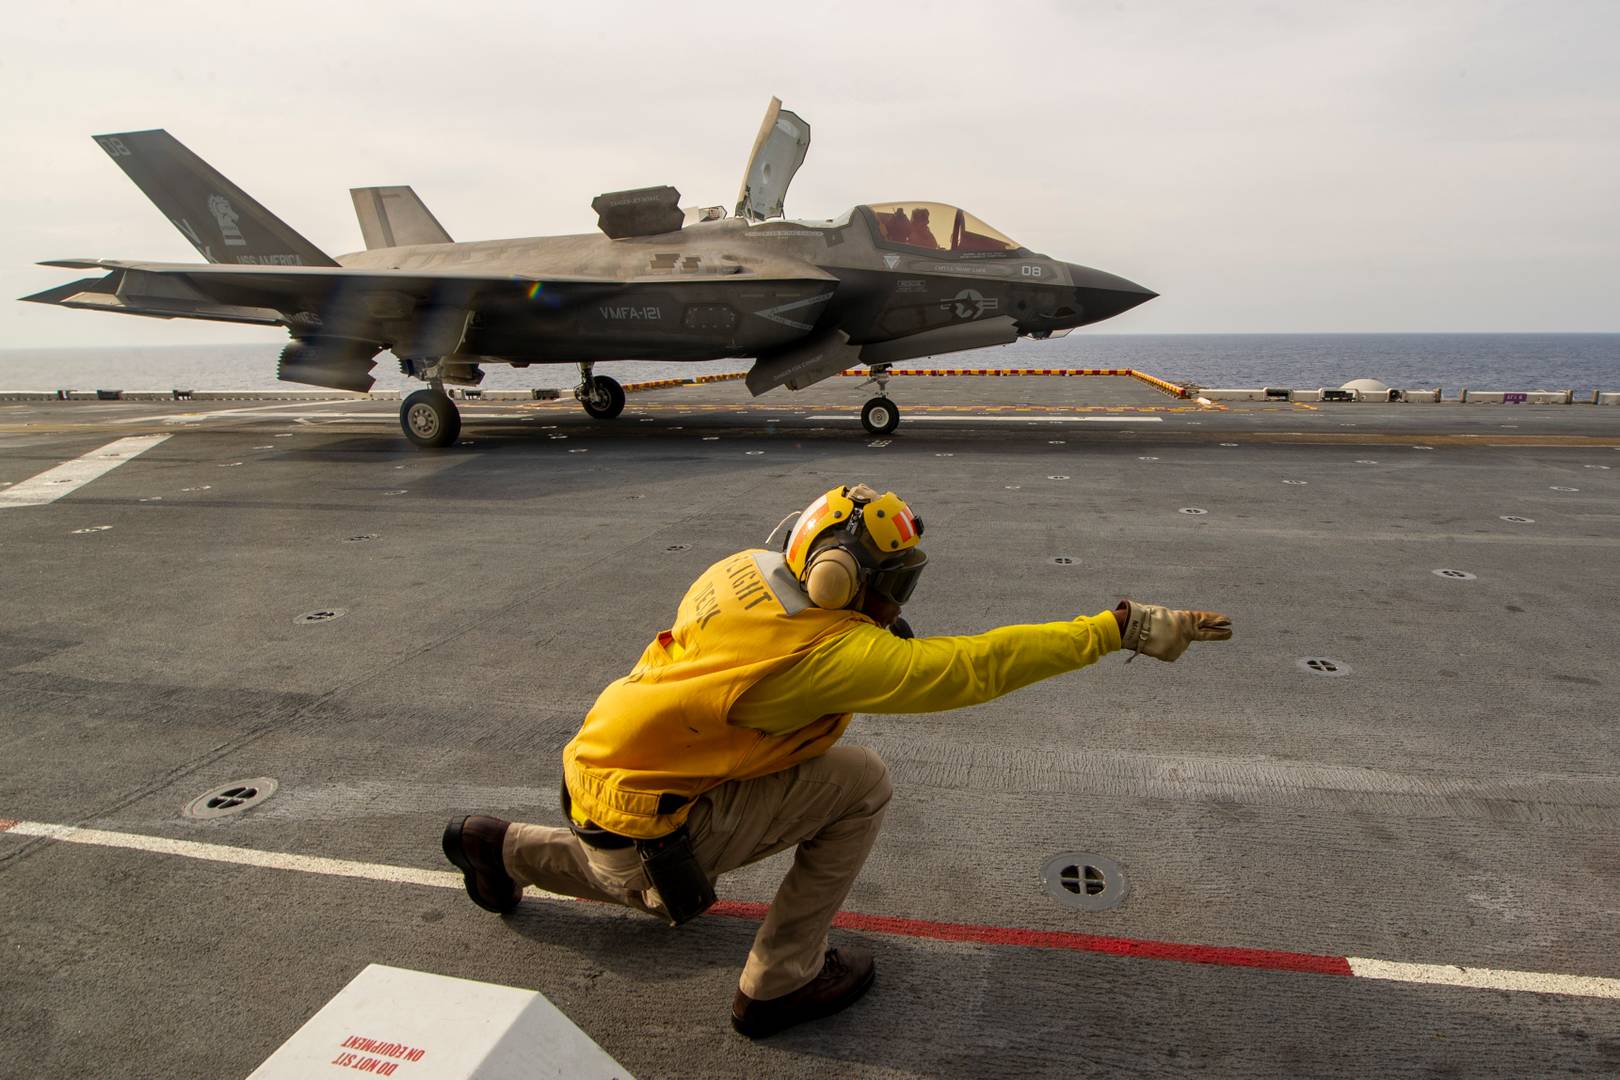 Служащий летной палубы дает команду на взлет пилоту истребителя F- 35B Lightning II с палубы десантного корабля USS America (LHA 6)